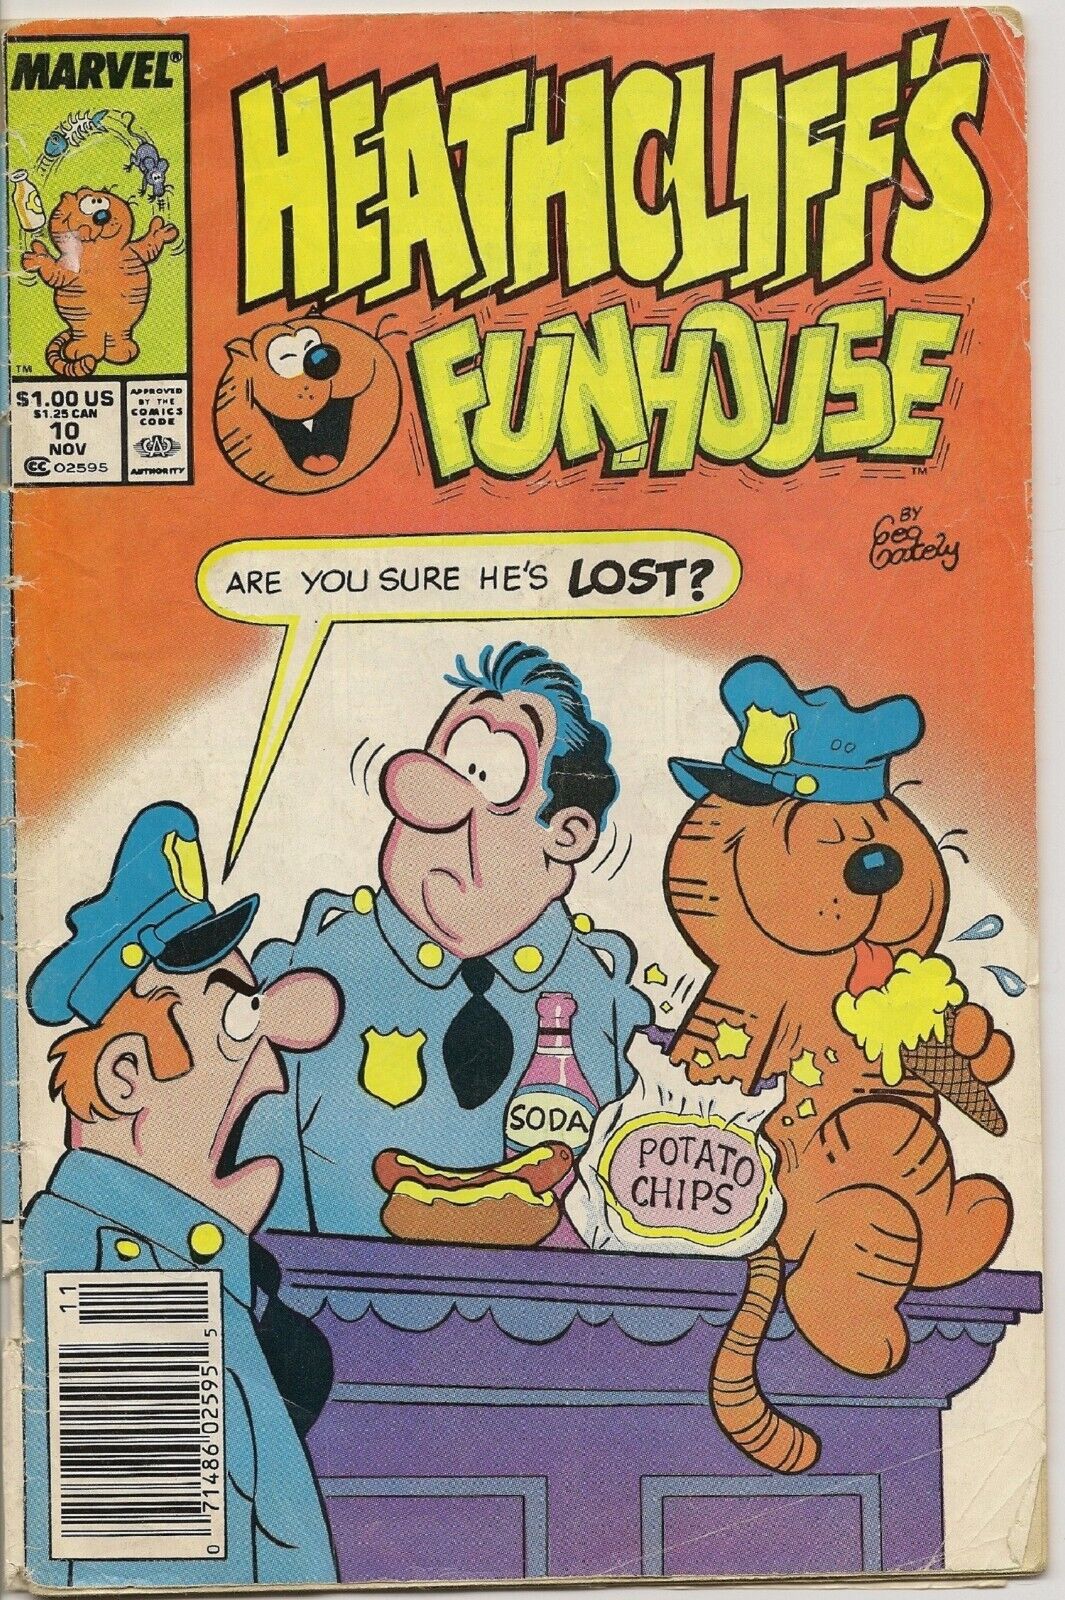 Heathcliff’s Funhouse No. 10, November 1988 (Marvel Comics)